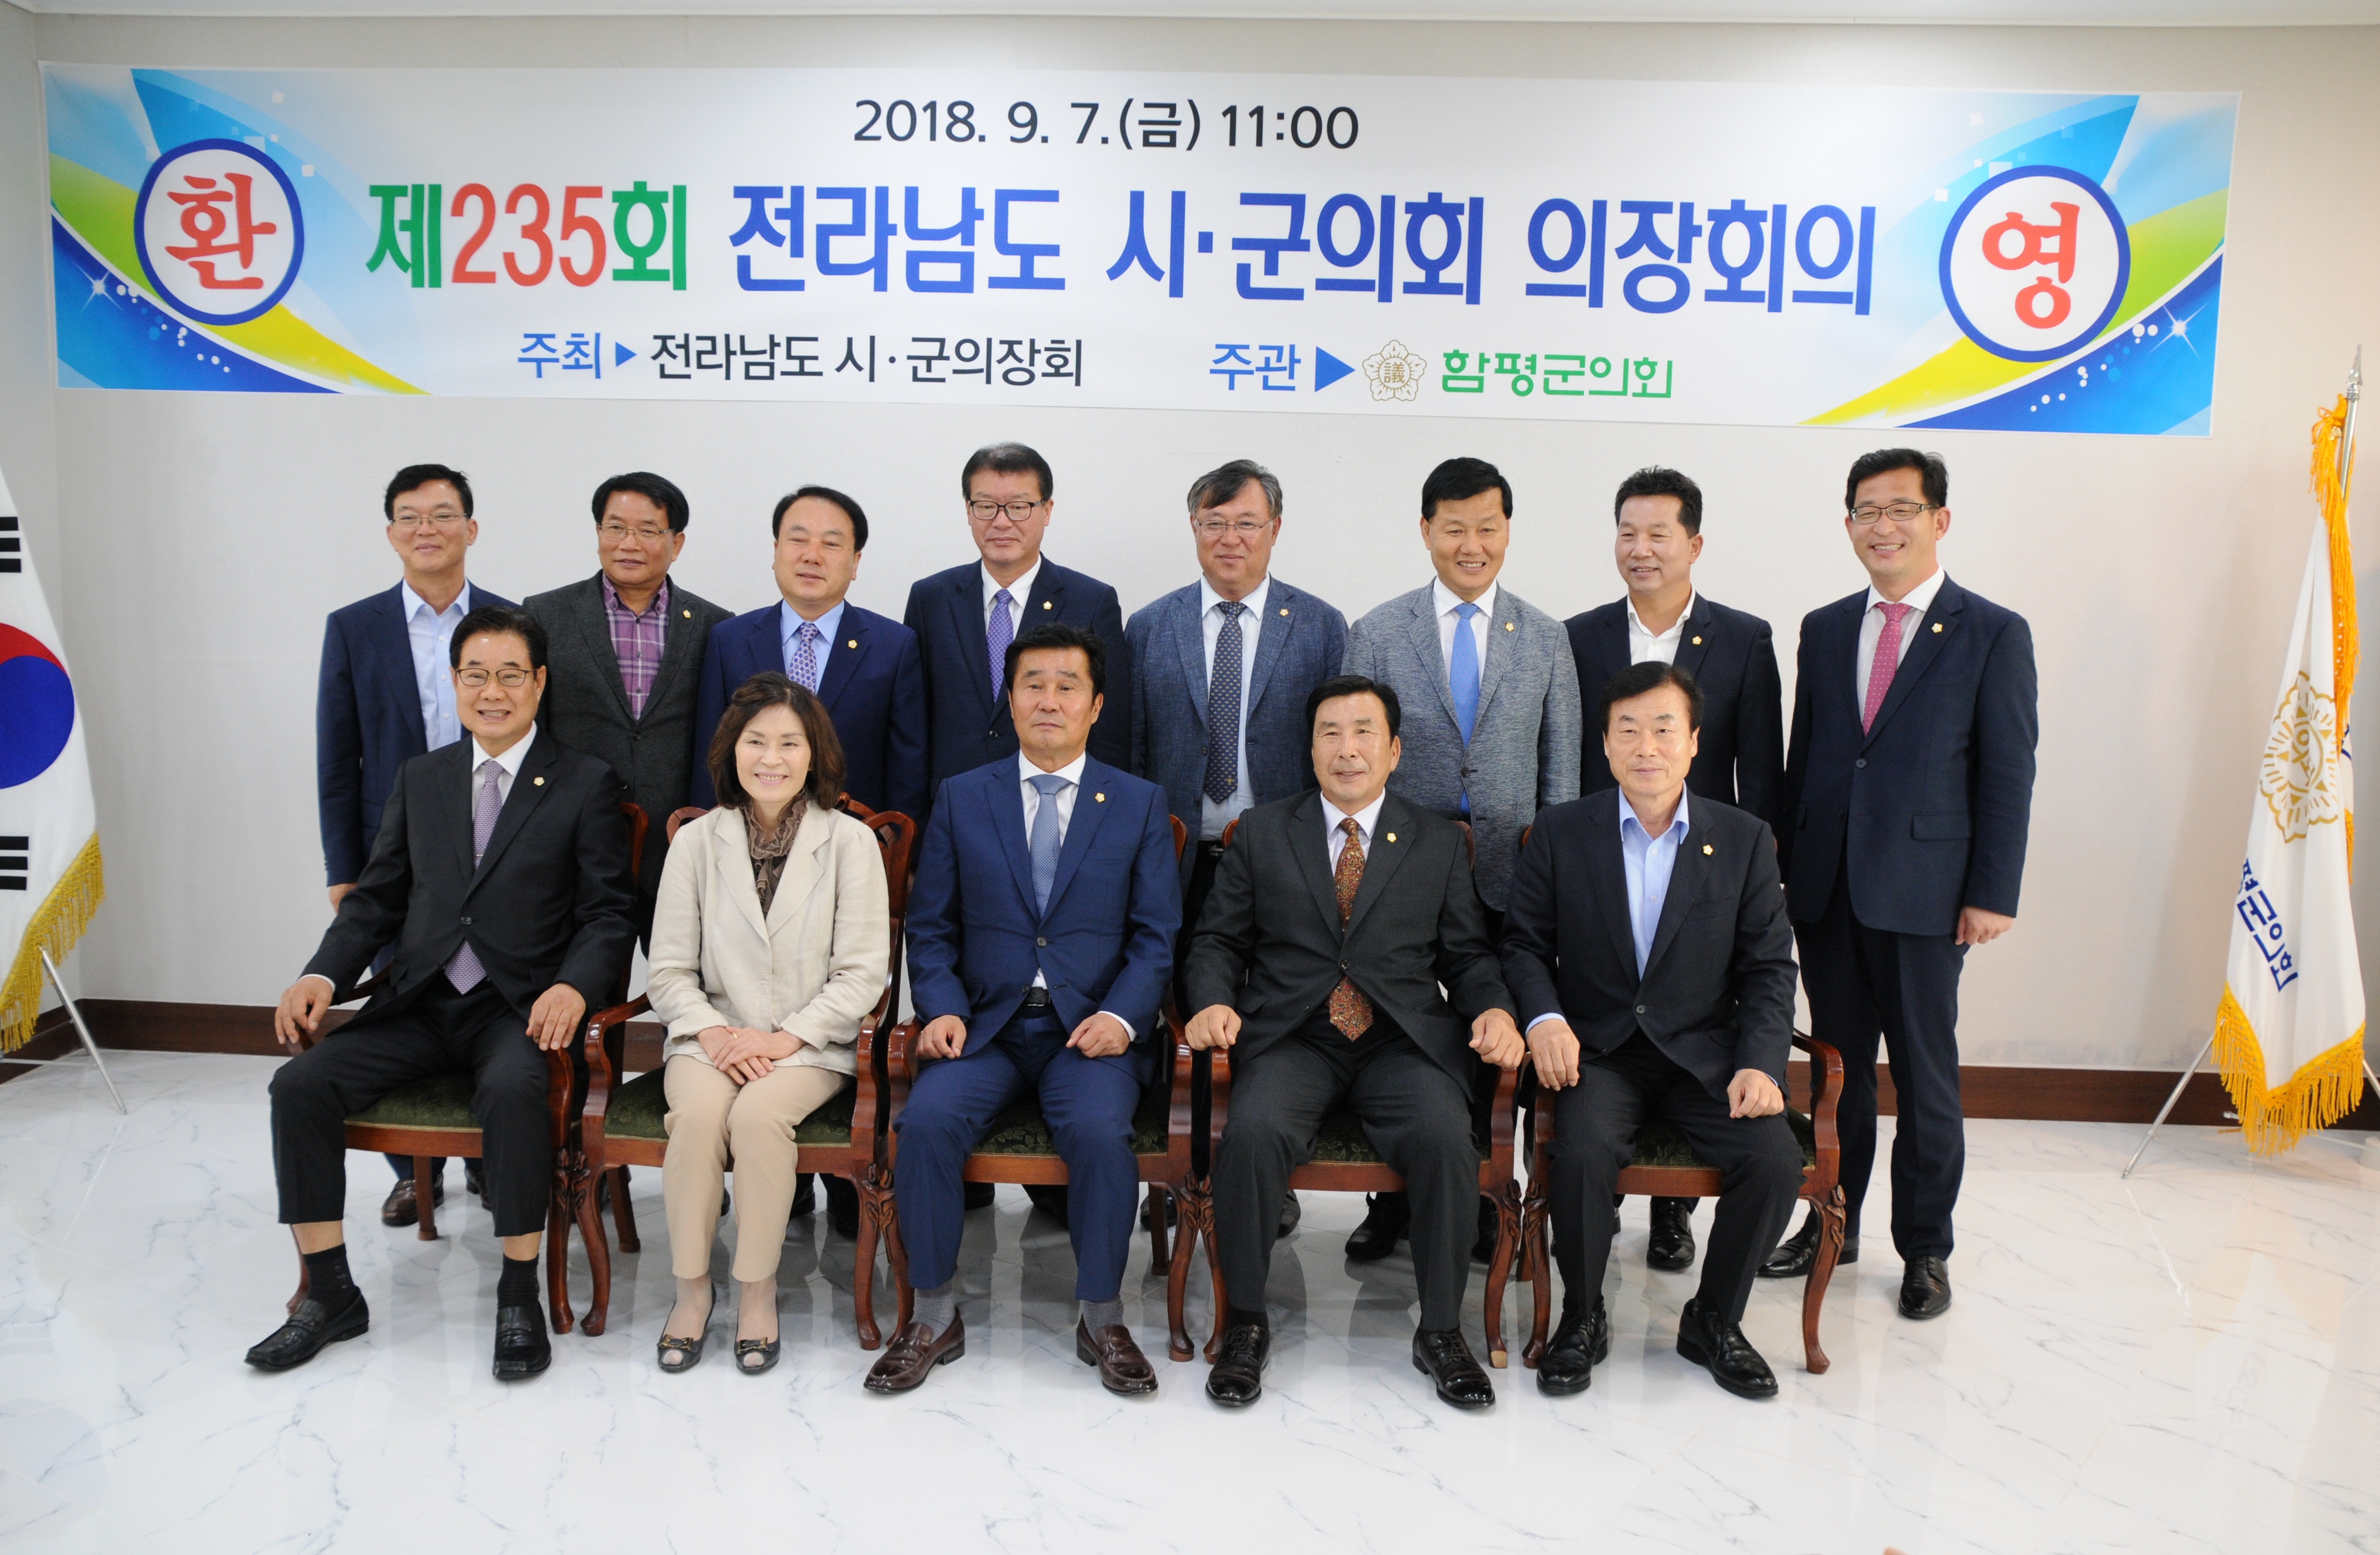 제235회 전남시.군의회 의장회의 개최(2018.09.07.)3